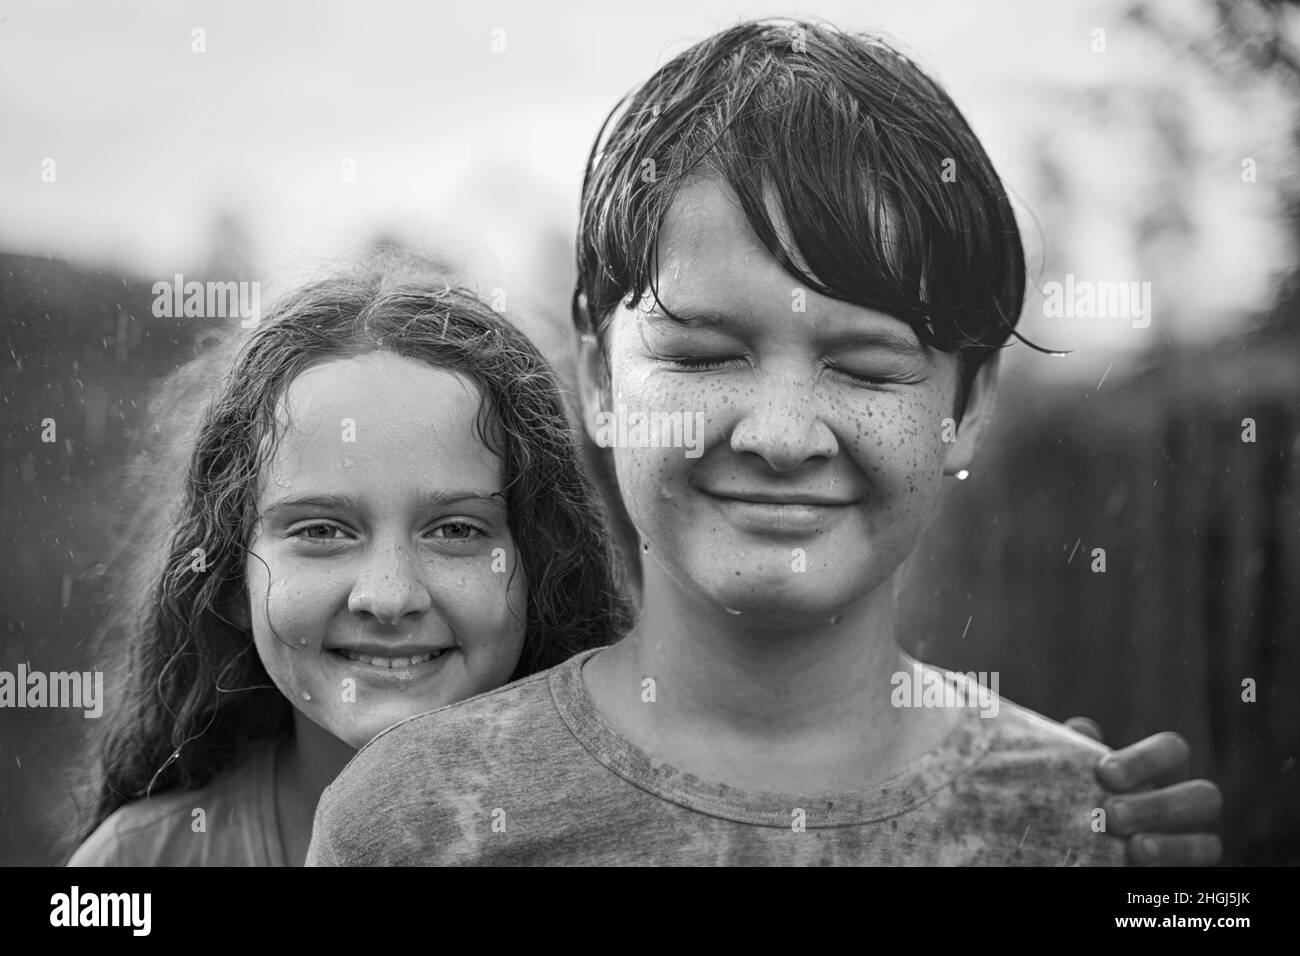 Nette Kinder, die im Regen einweiden und spielen, schwarz-weißes Familienportrait. Friendship oder World Hug Day Konzept. Stockfoto